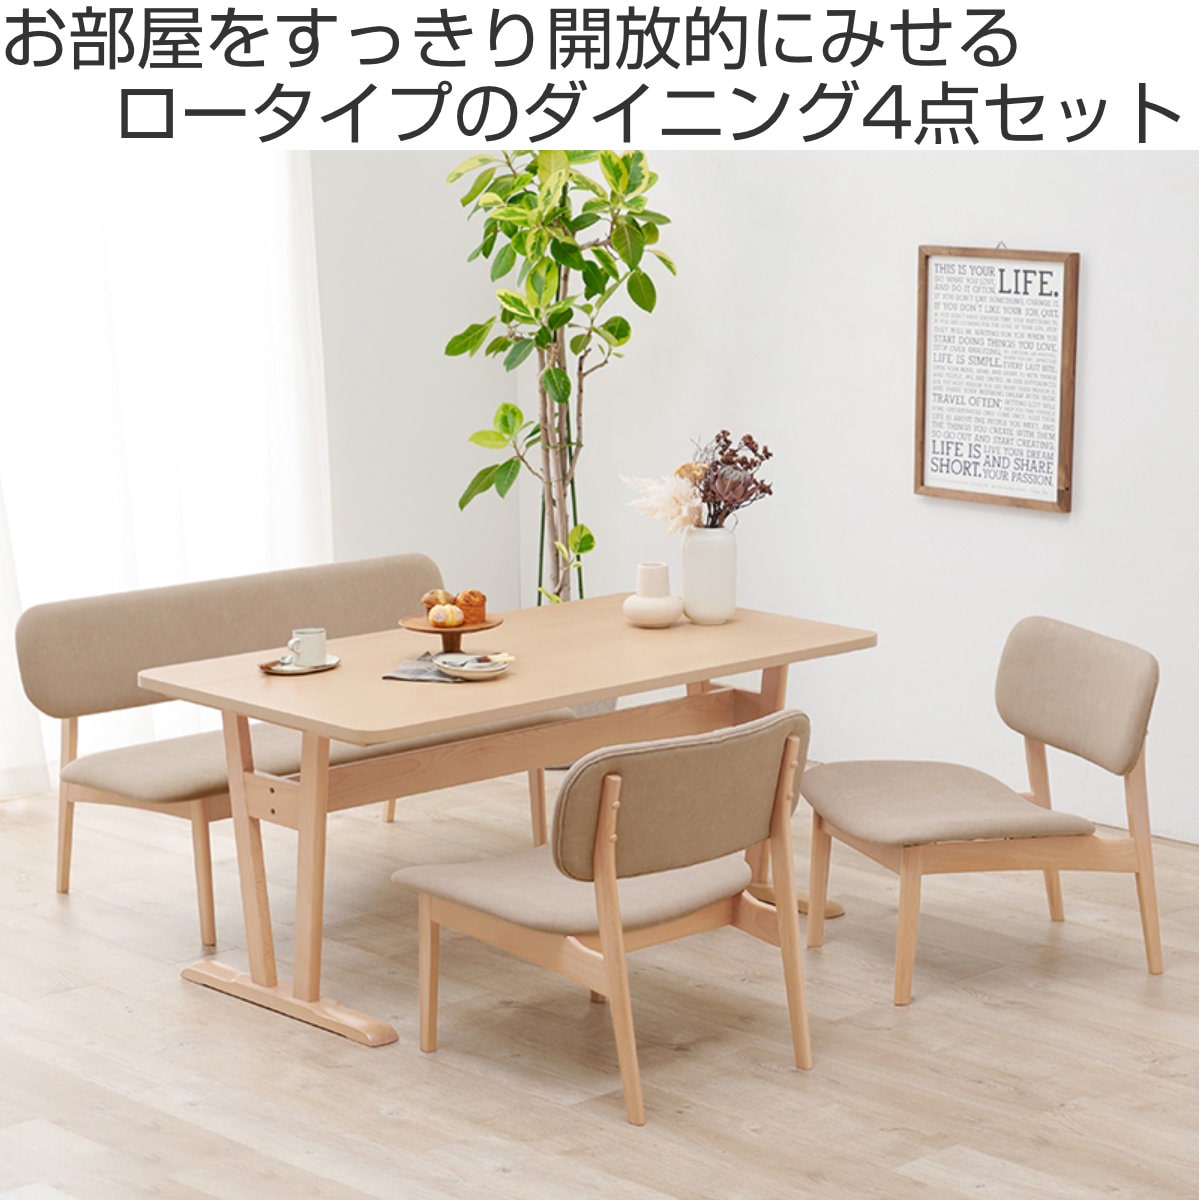 値段交渉可※ダイニングテーブルと回転椅子４脚セット ナフコ - 宮崎県 